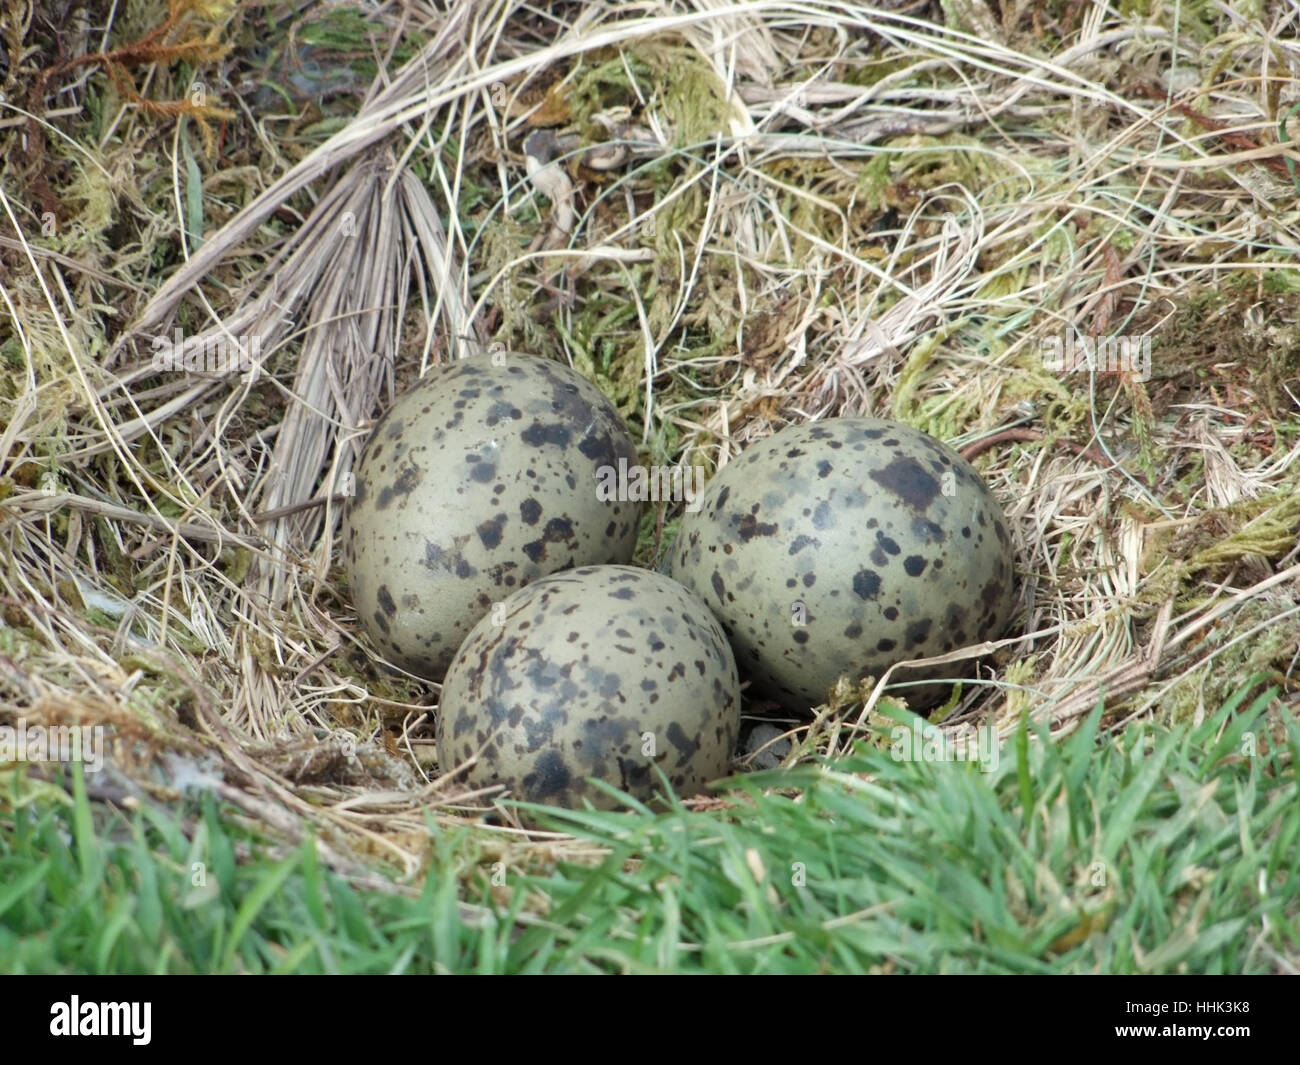 Dettaglio shot che mostra il nido di un gabbiano con 3 uova, vista sull'arcipelago delle Azzorre, che è un gruppo di isole di origine vulcanica situato nel mezzo del Nord Oceano Atlantico Foto Stock